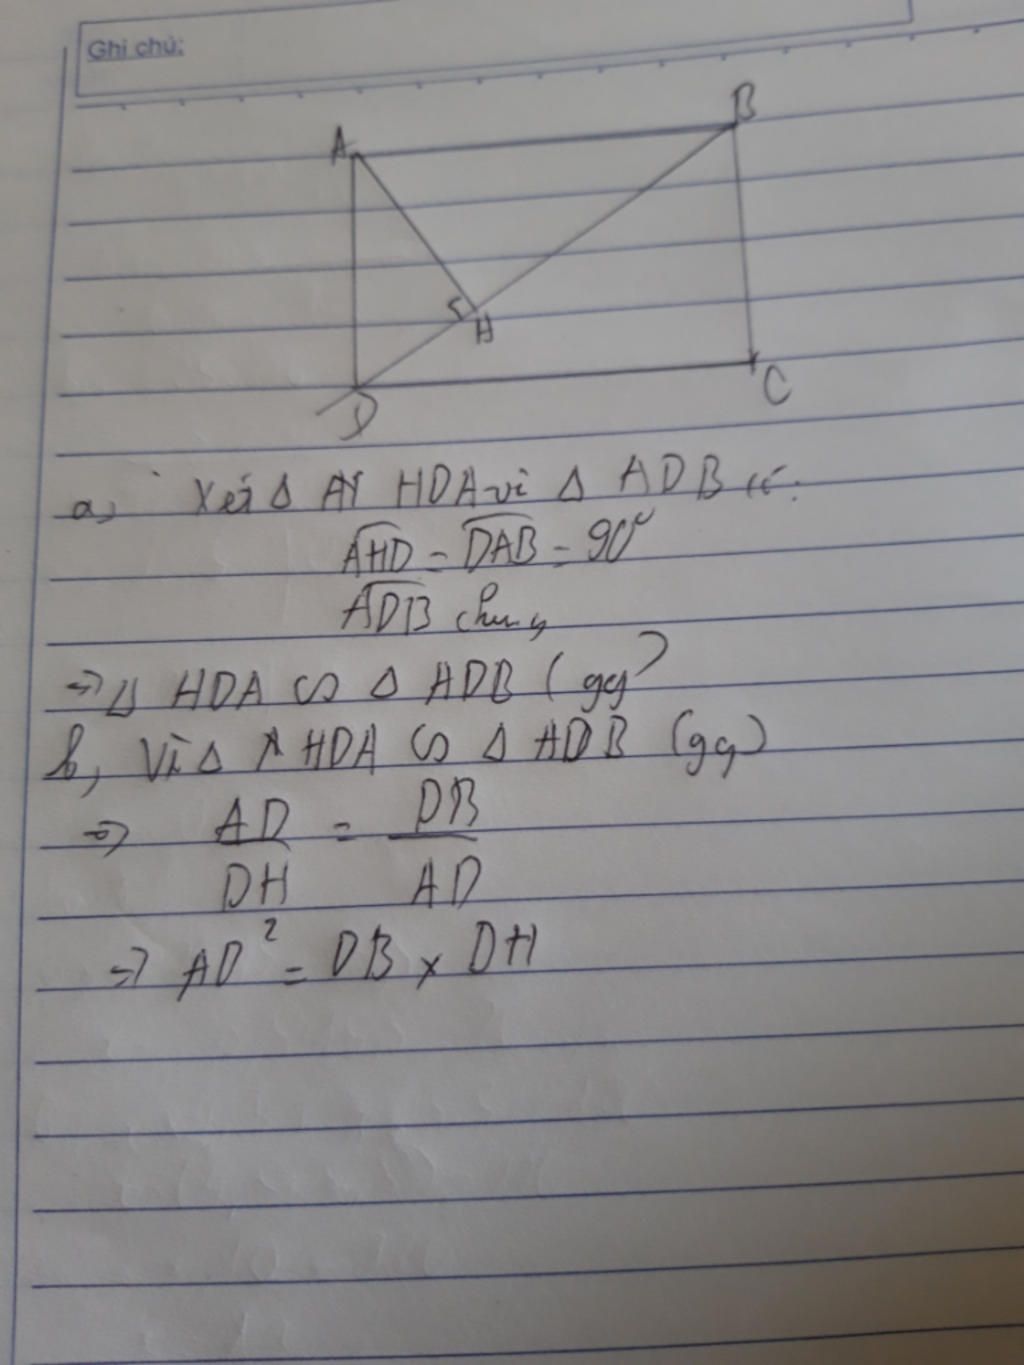 Cho hình chữ nhật ABCD, với H là trung điểm của BD. Chứng minh tam giác AHB đồng dạng với tam giác CBD.
